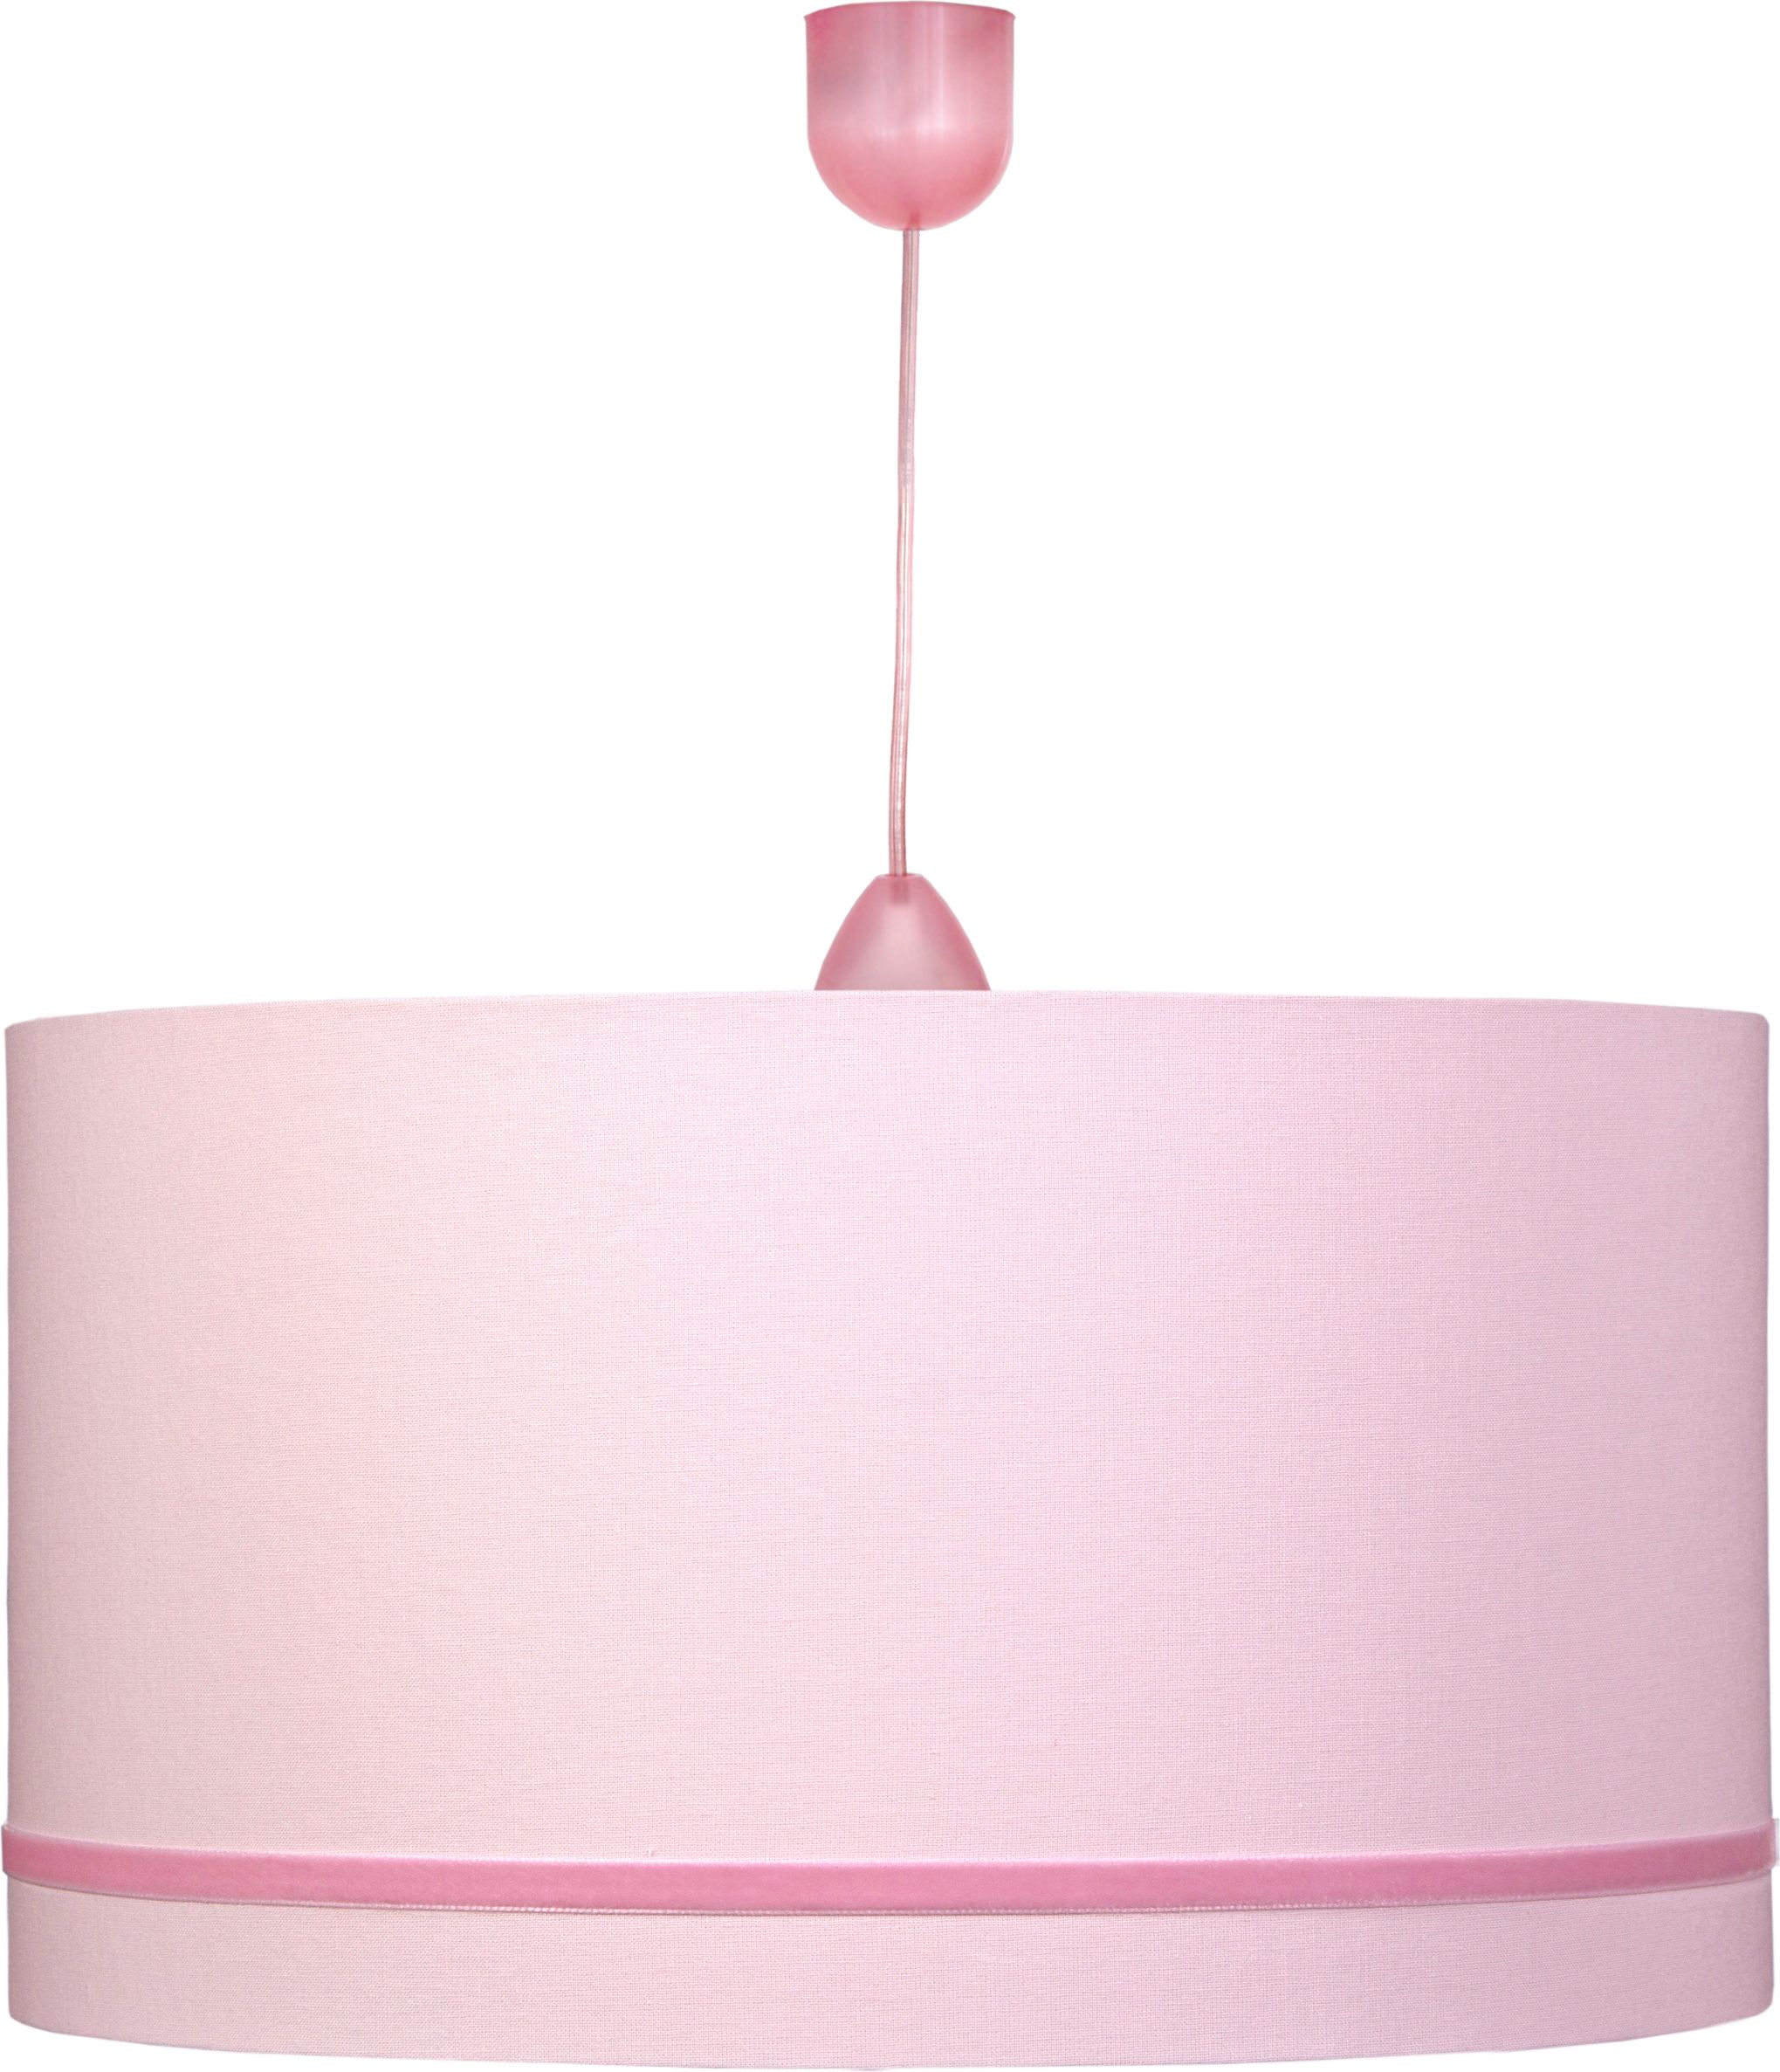 Waldi Leuchten se Stuhou W70253.0 dětské růžové závěsné svítidlo - obrázek 1